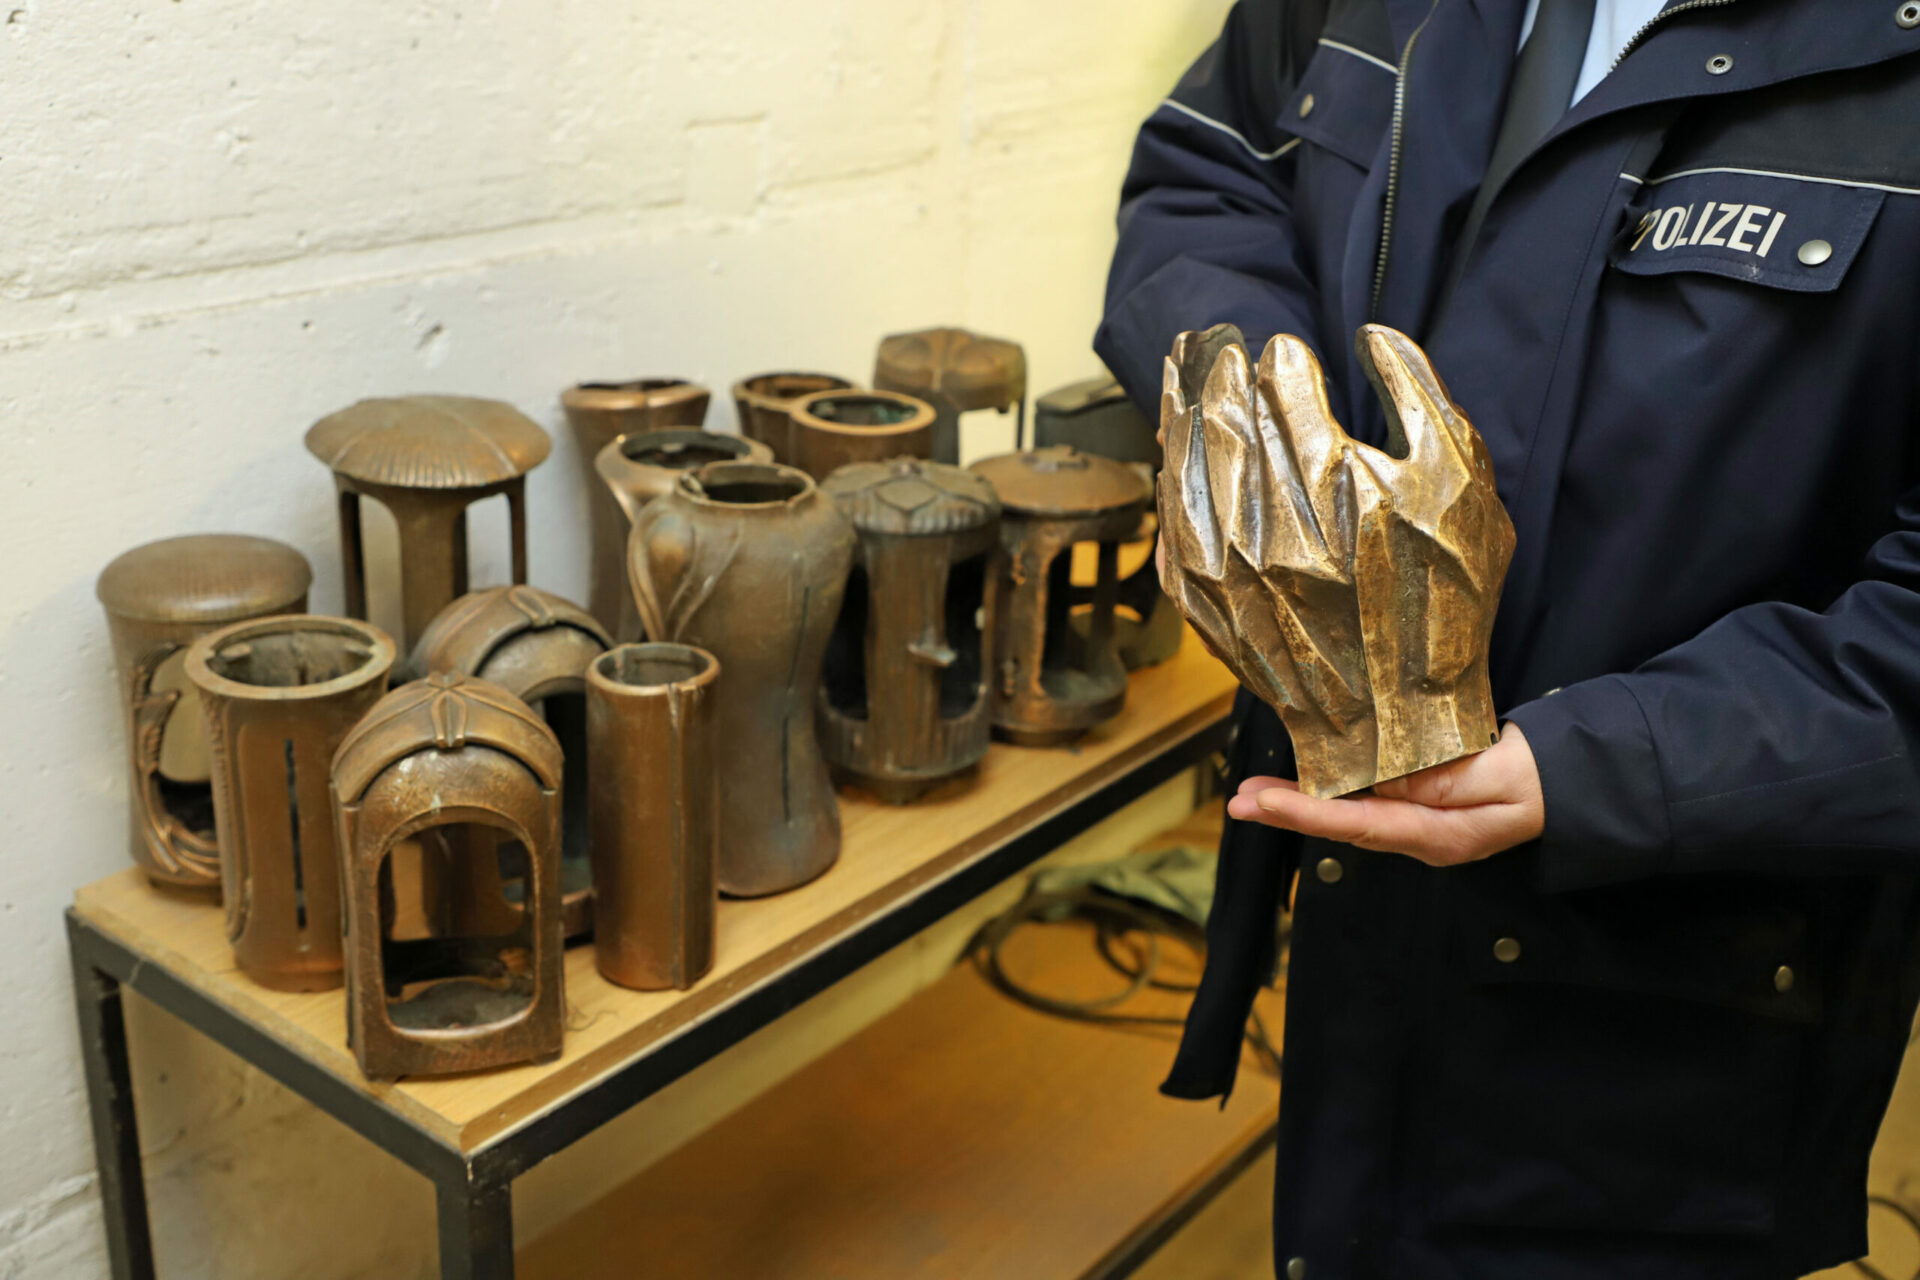 Beschuldigter festgenommen, Diebesgut sichergestellt: Polizei sucht die Eigentümer von Bronze-Vasen und -Lampen